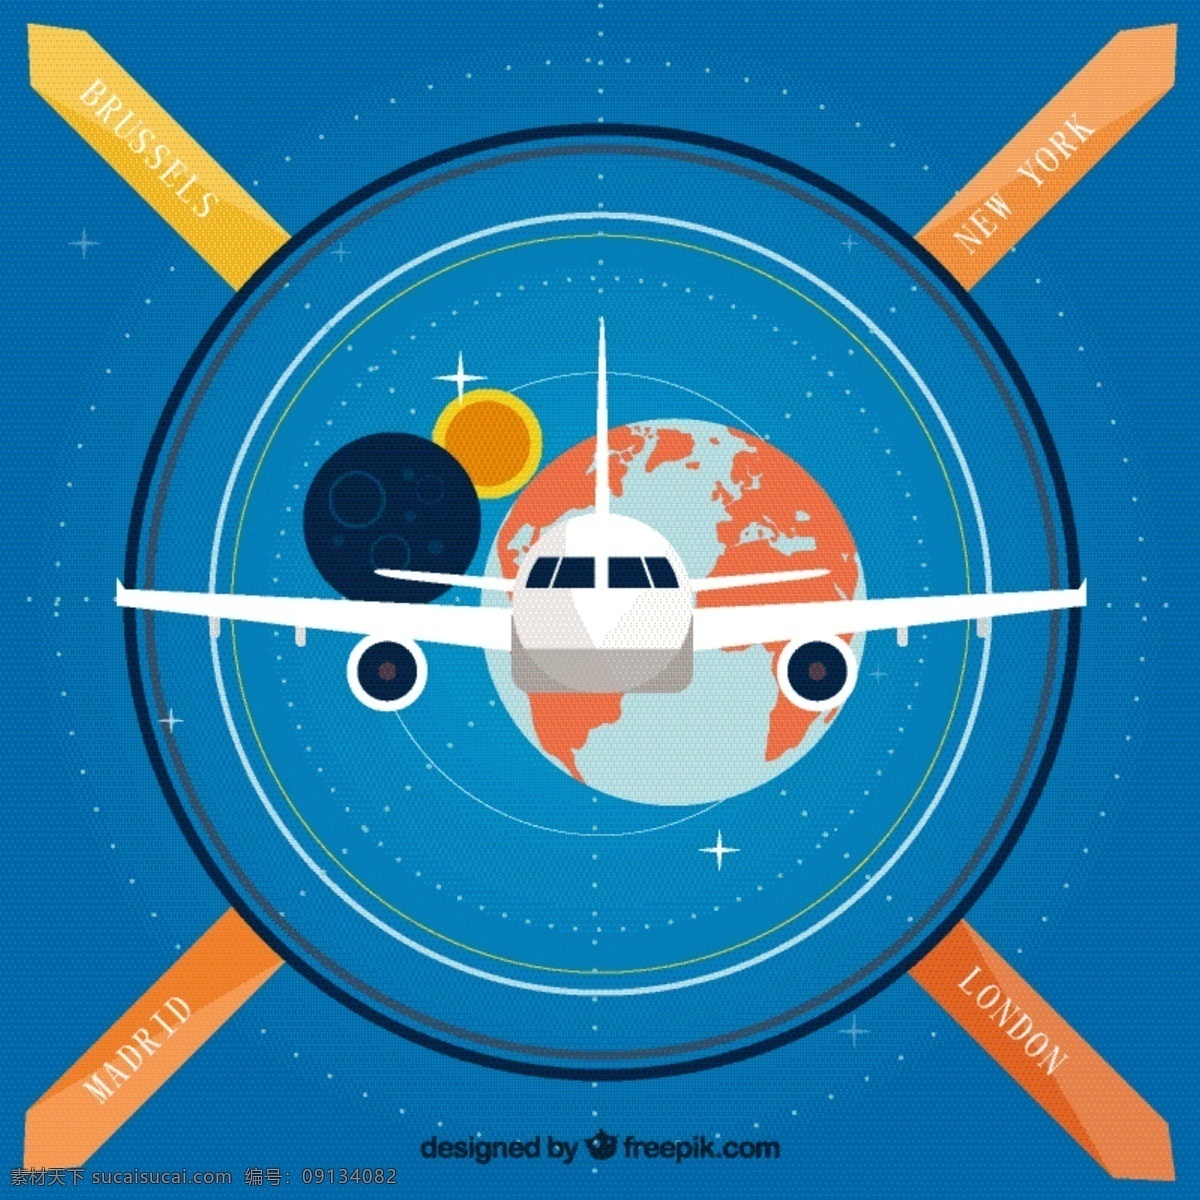 环球 商务 飞机 插画 矢量图 蓝色 海报 背景 扁平